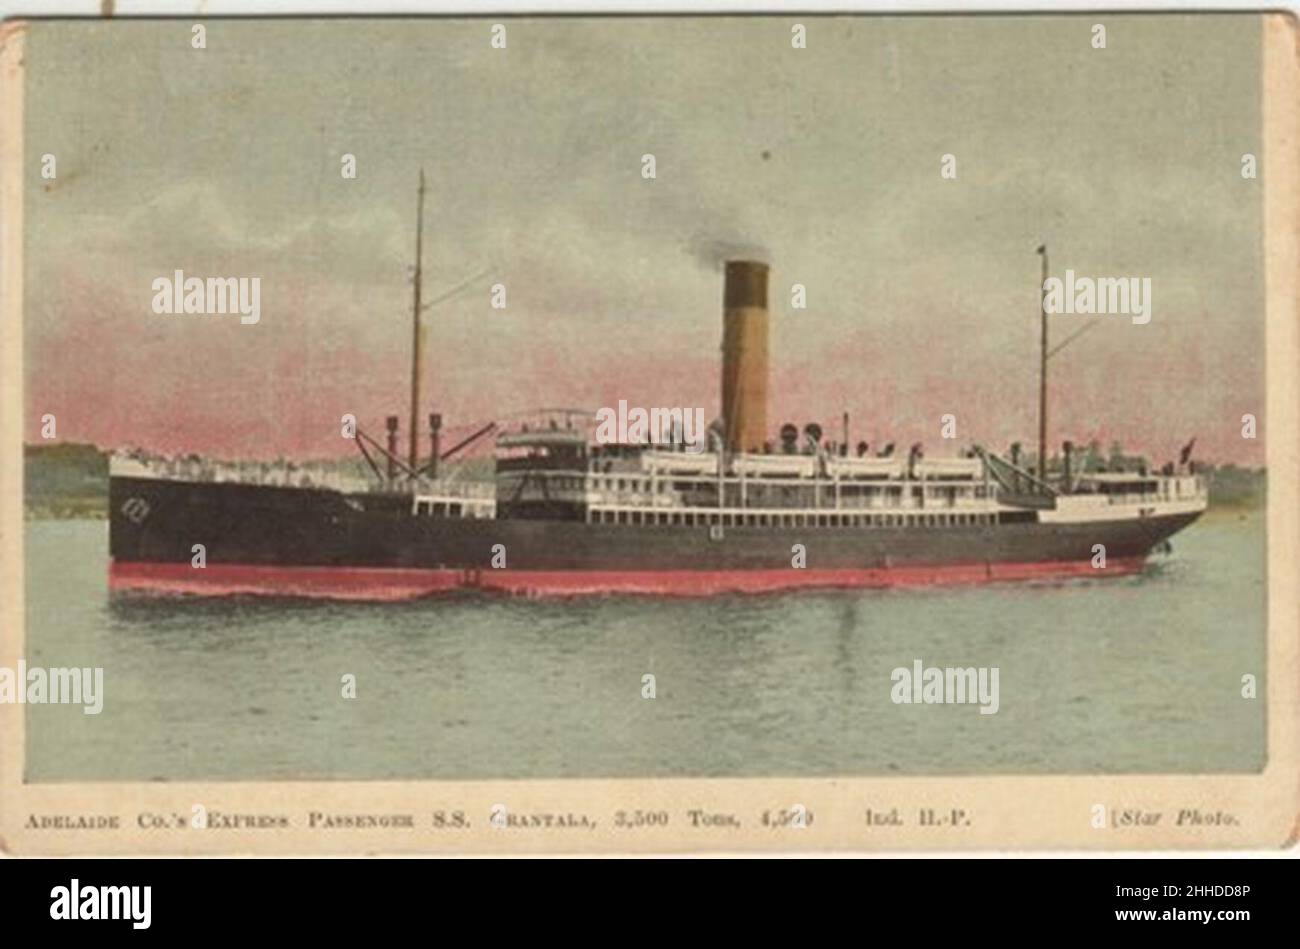 SS Grantala. Stock Photo